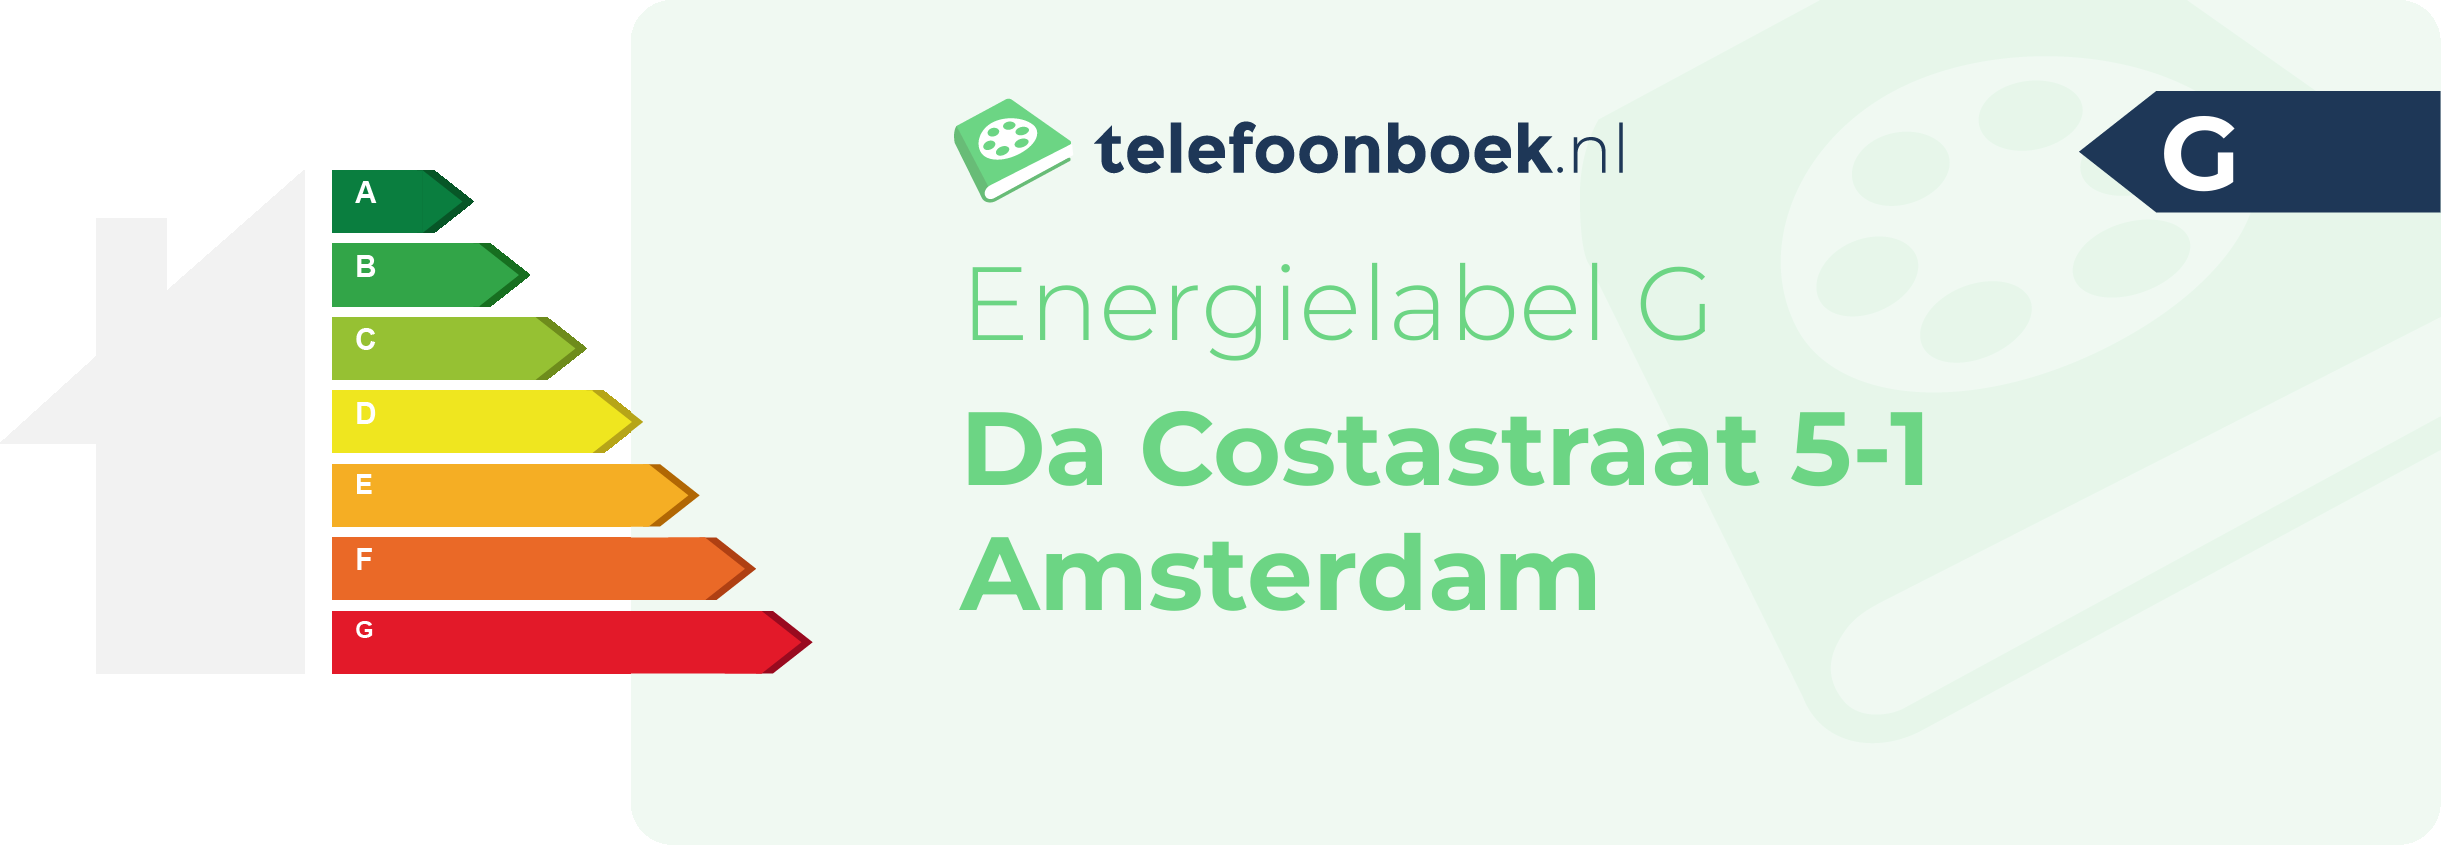 Energielabel Da Costastraat 5-1 Amsterdam